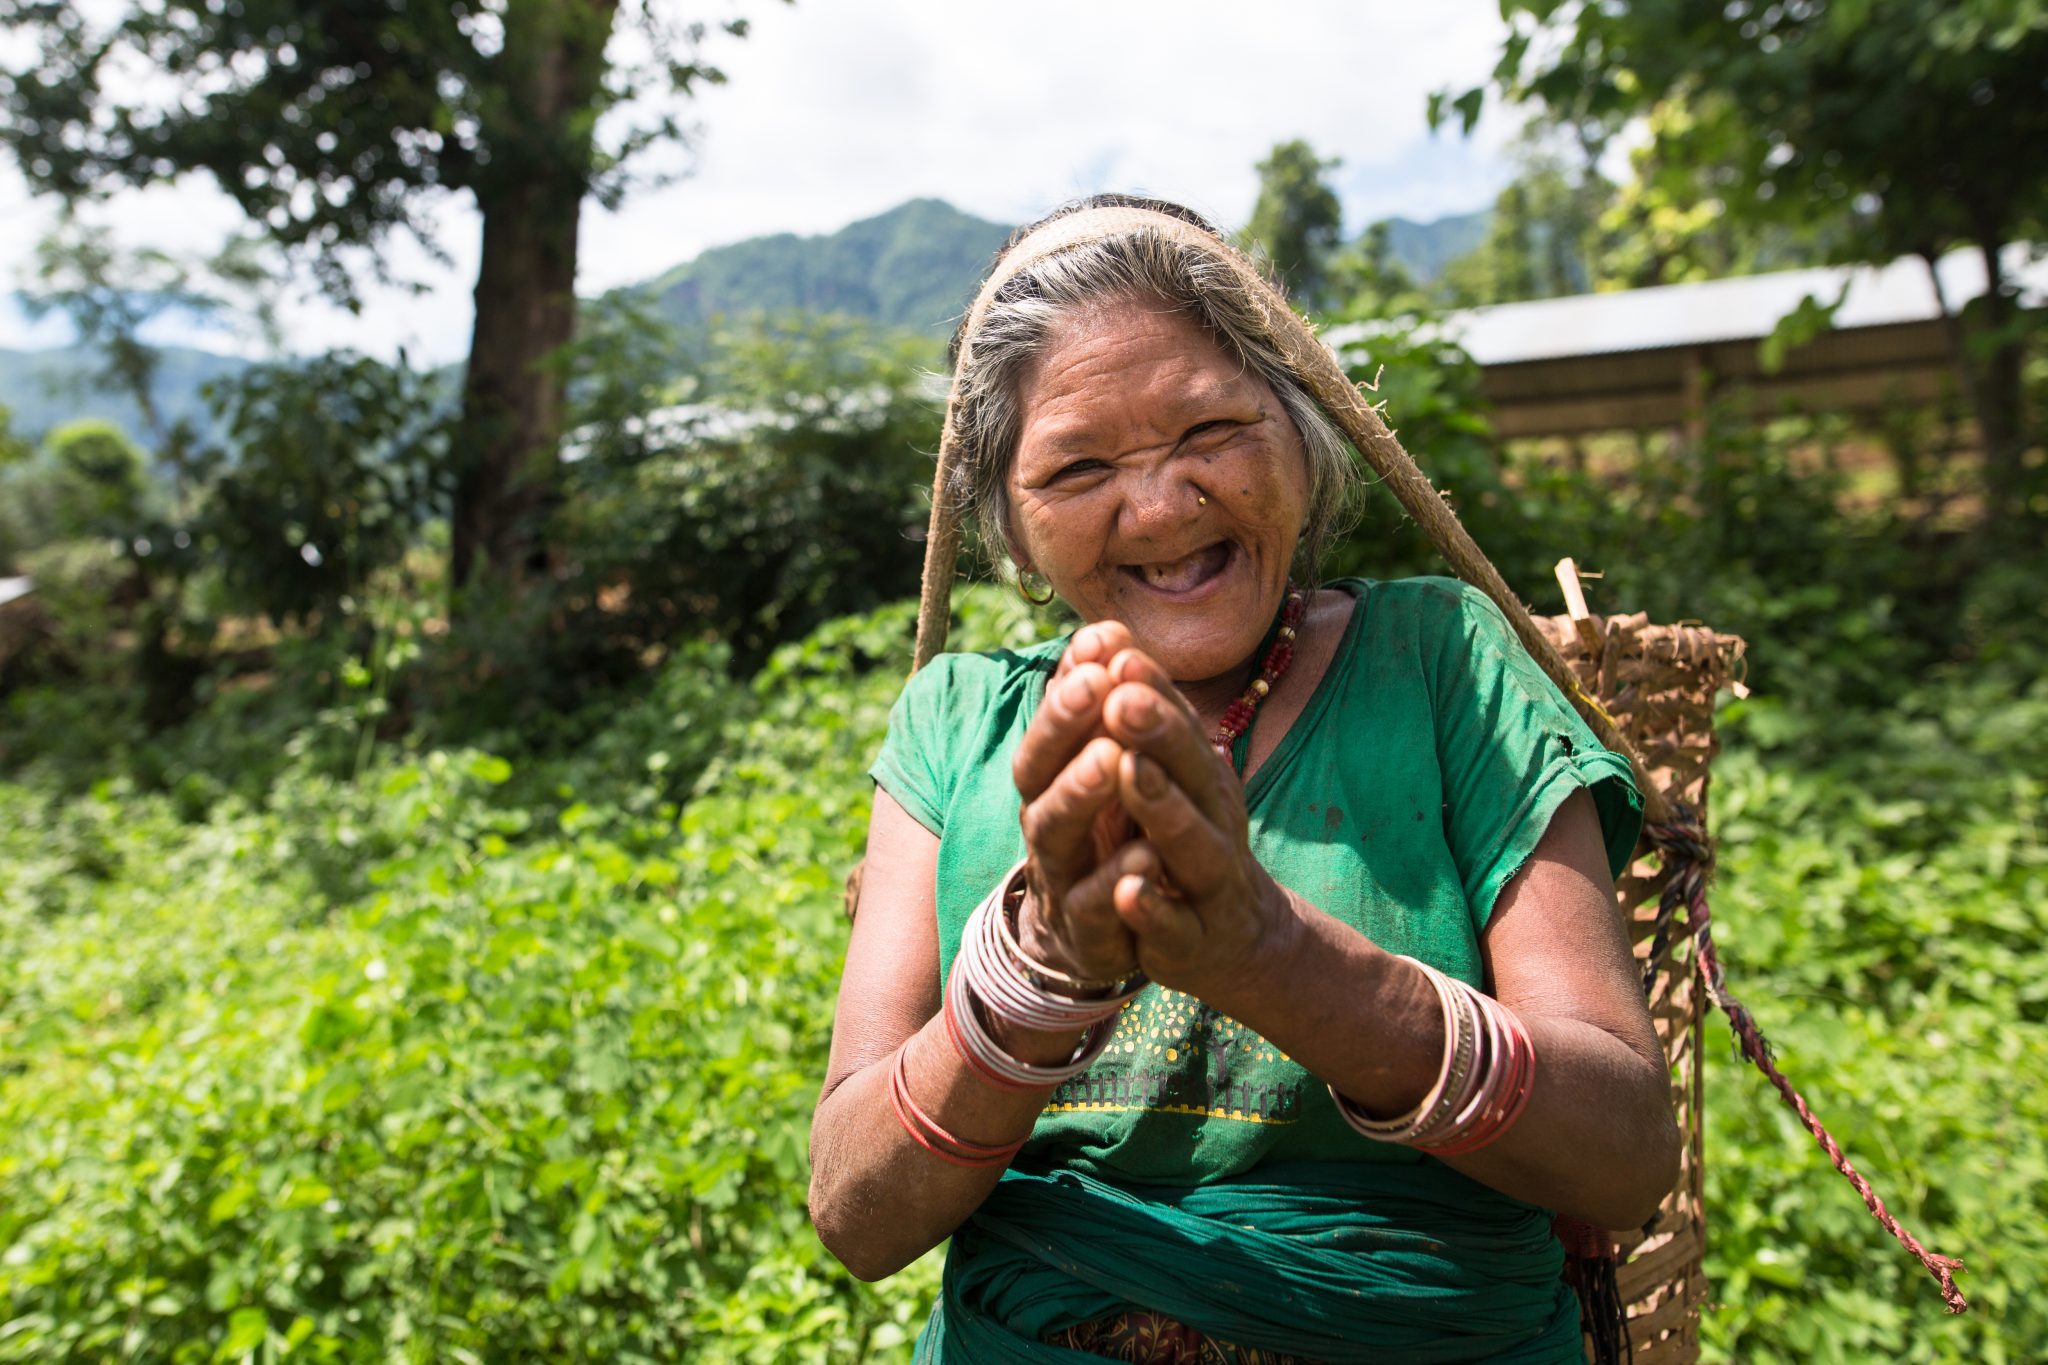 زن نپالی در ریاتوله نپال لبخند می زند و سبدی بر سر دارد